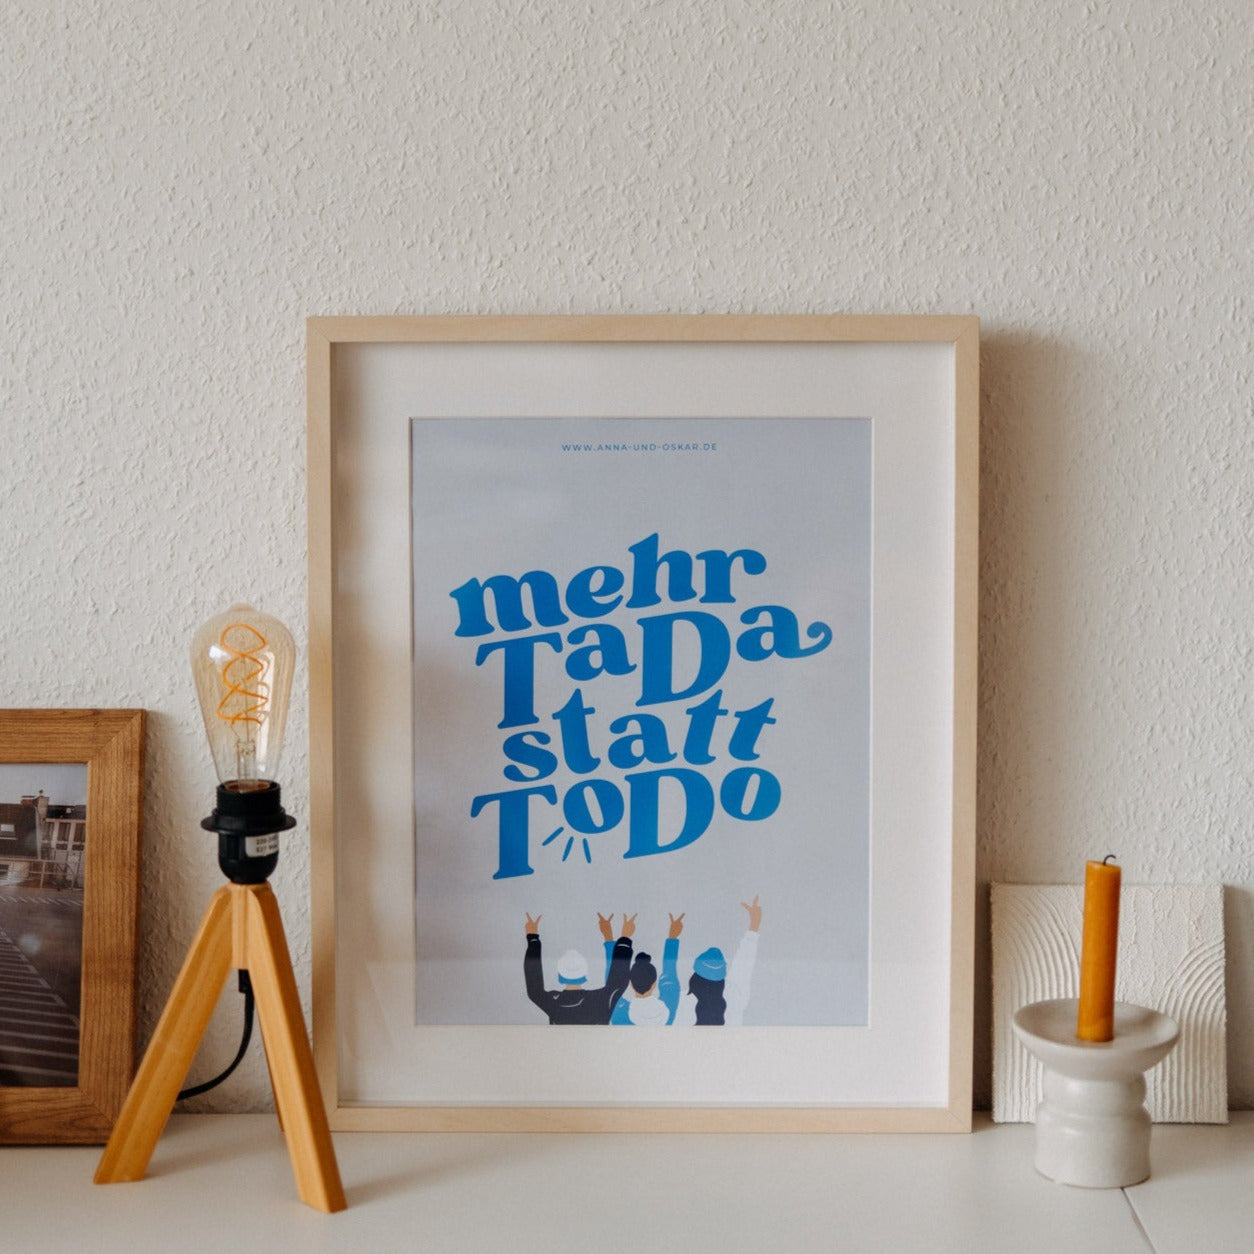 Poster "Mehr Tada statt ToDo"